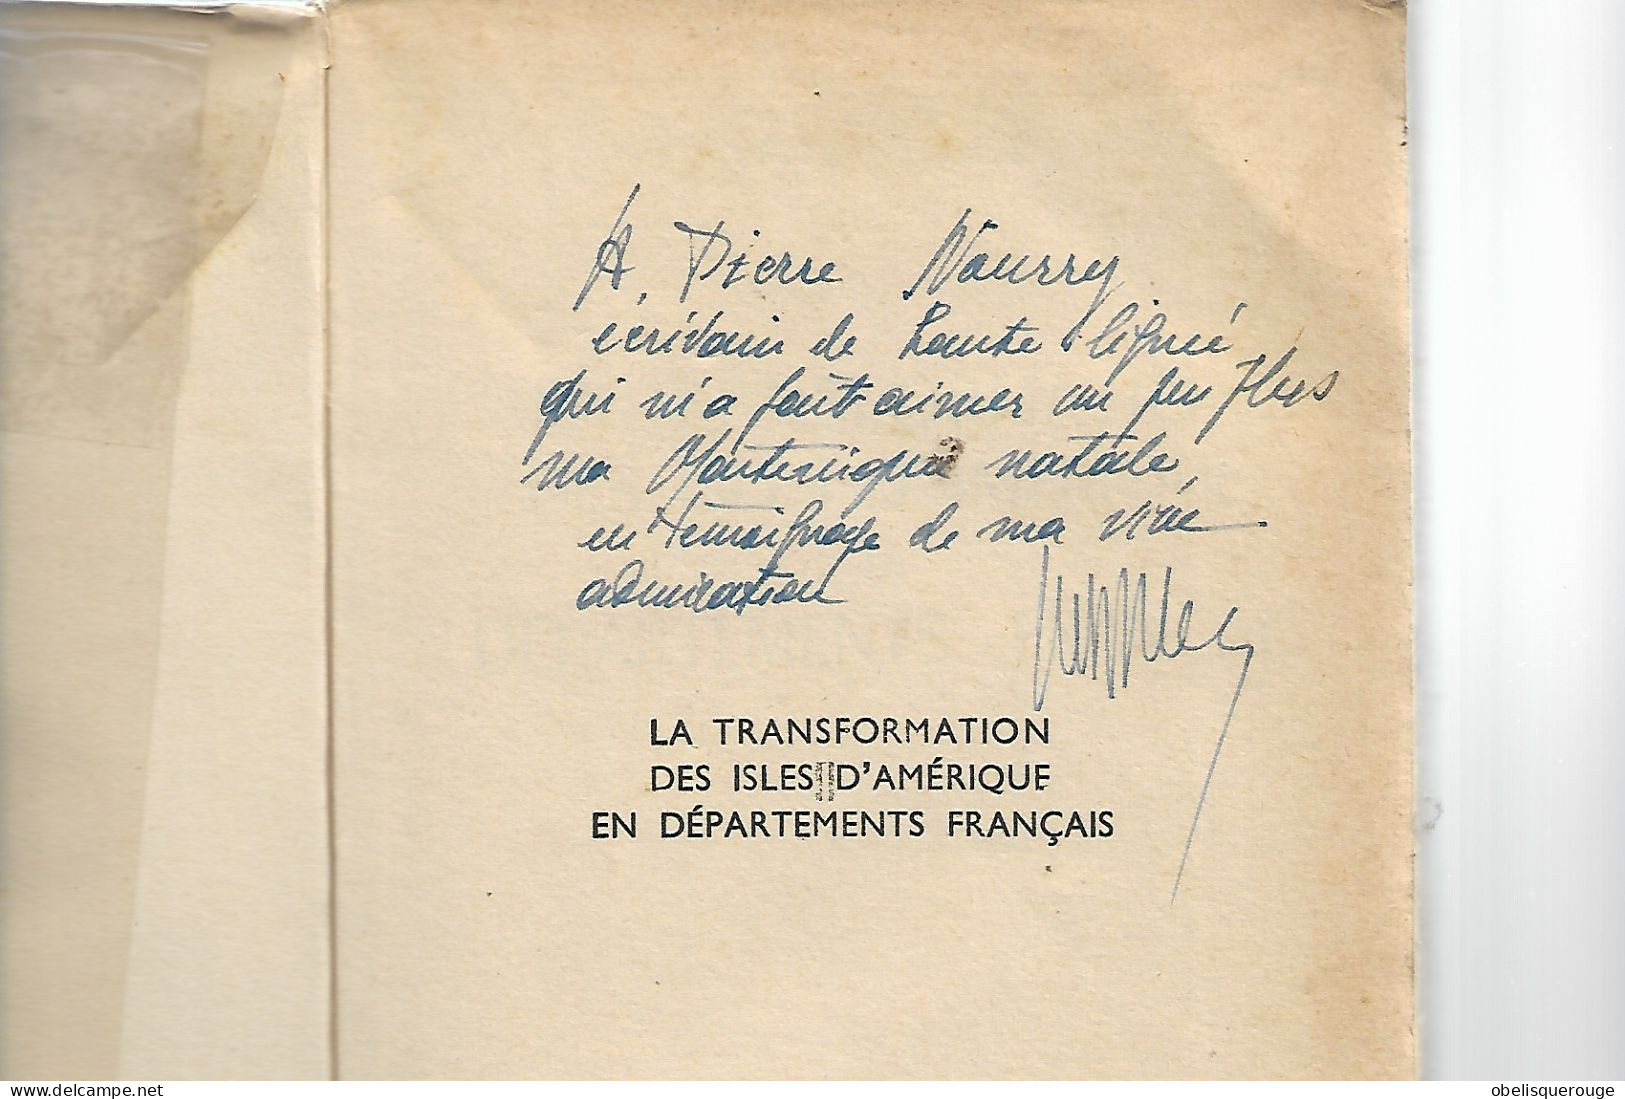 LIVRE Martinique VICTOR SABLE TRANSFORMATION DES ILES EN DEPARTEMENT FRANCAIS DEDICACE 1955 - Autographed